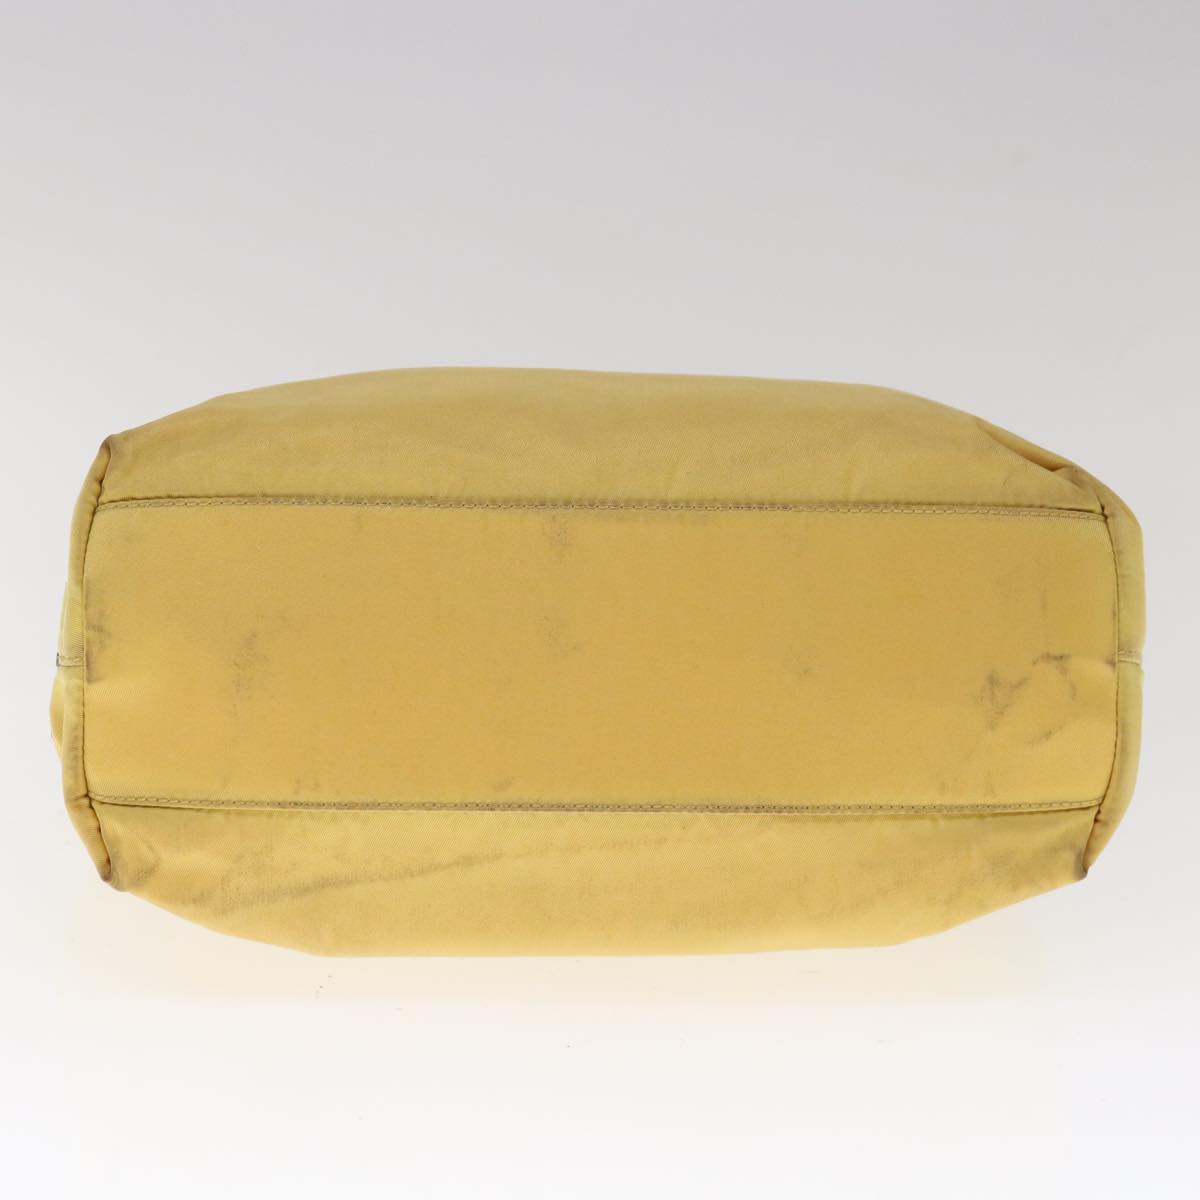 PRADA Hand Bag Nylon Yellow Auth yk10521